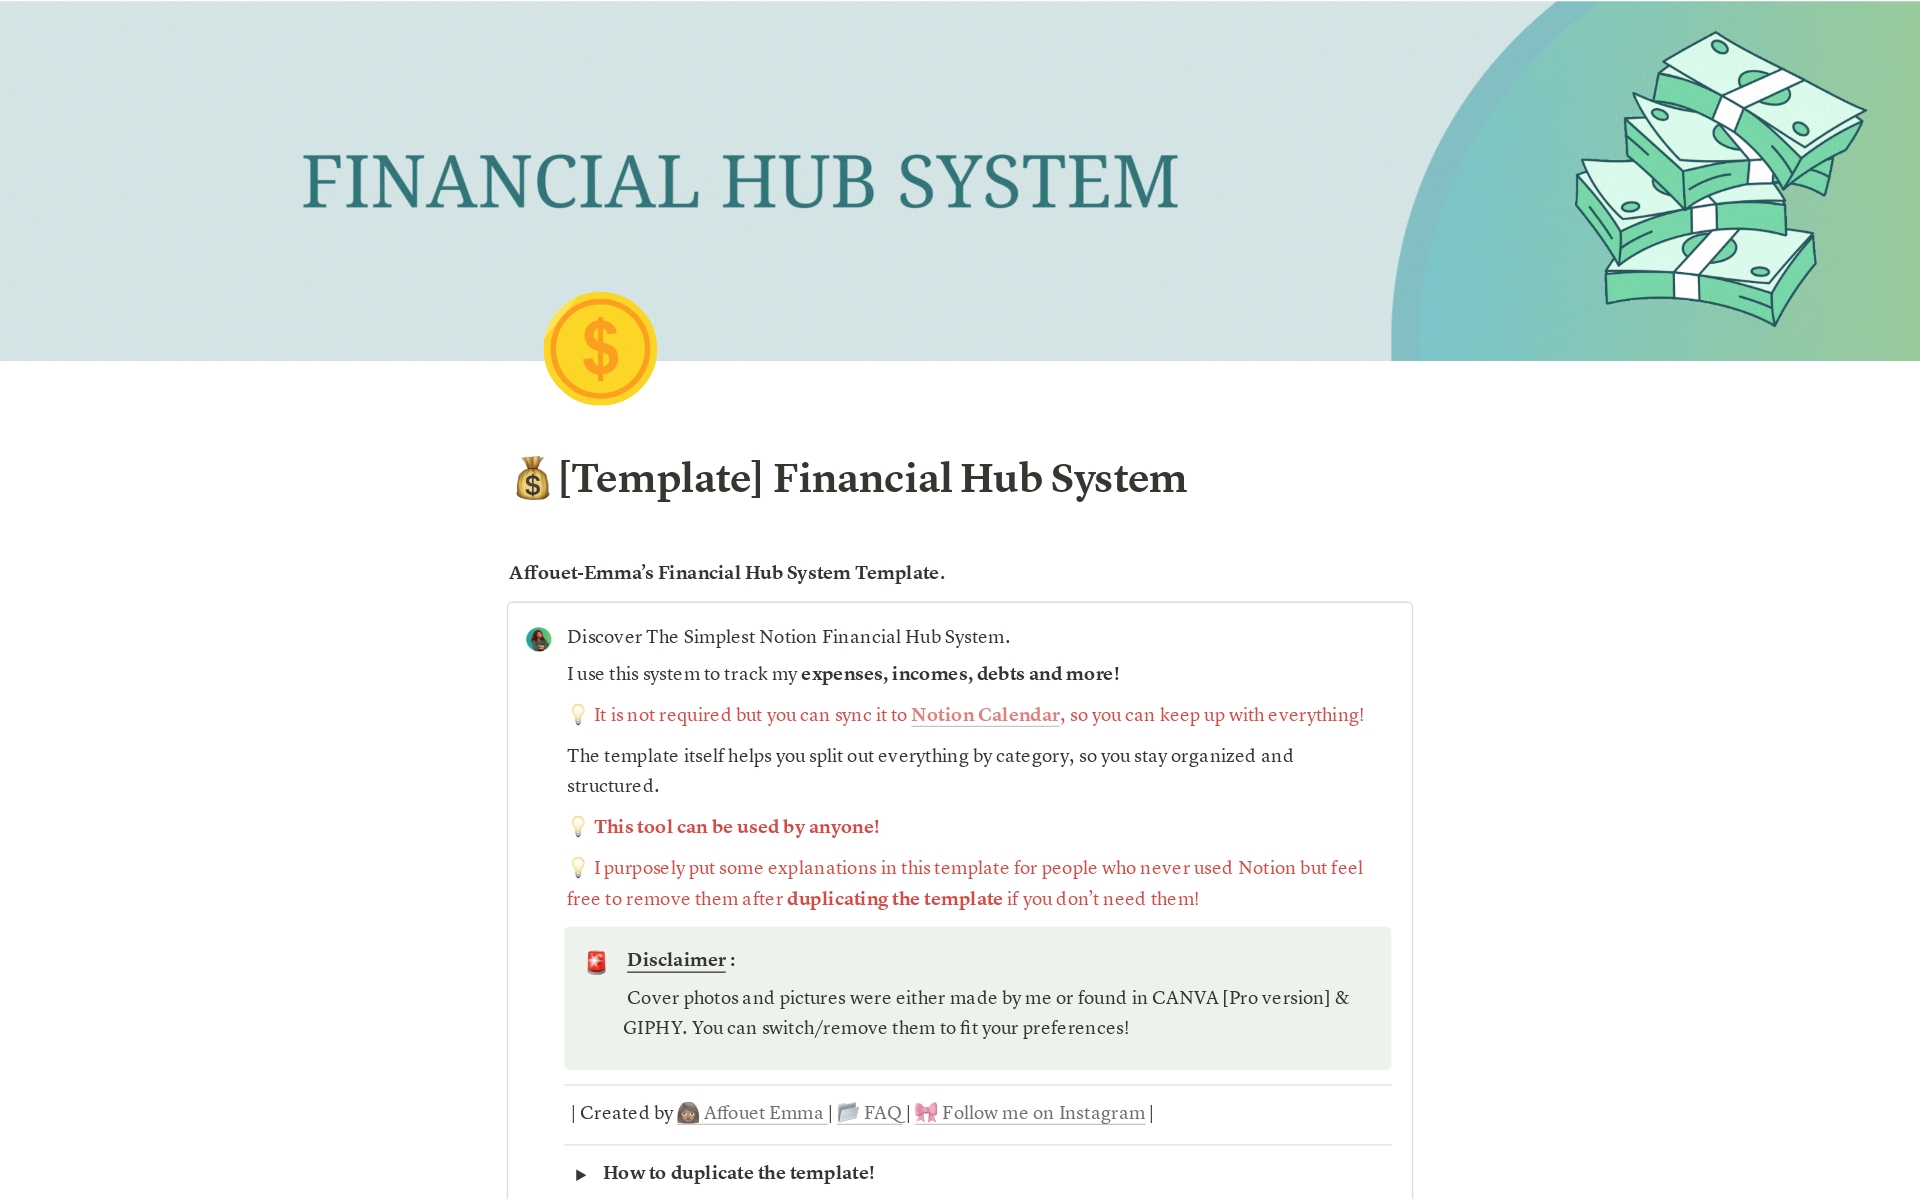 Uma prévia do modelo para Financial Hub System